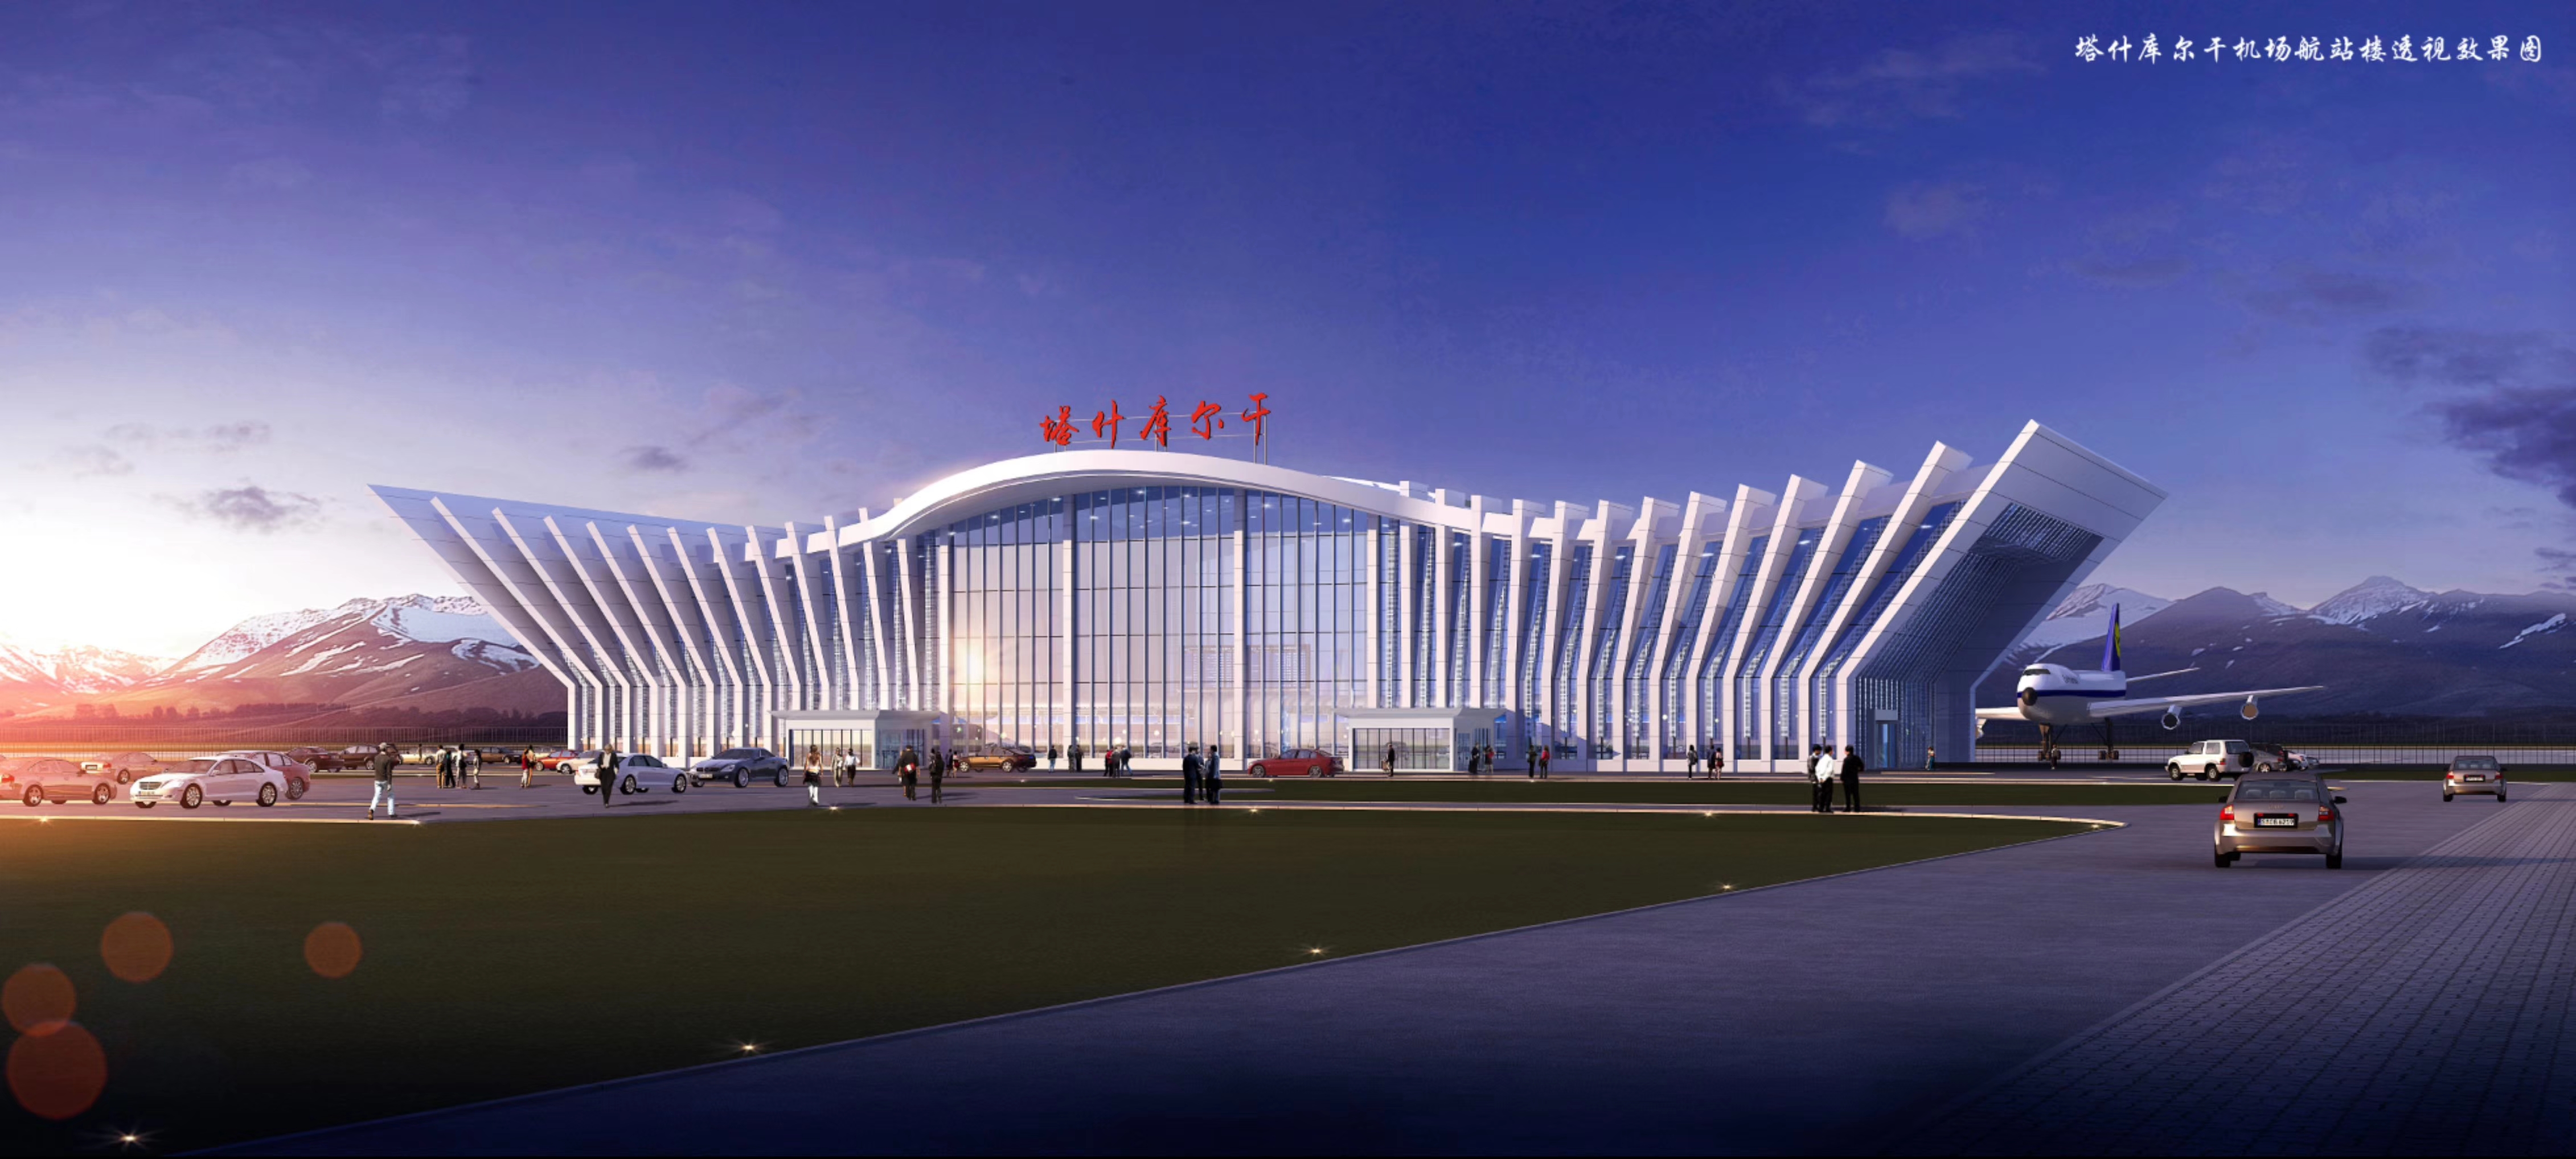 昭苏·天马机场建设项目工程进展顺利,预计2021年6月底完工,7月进行